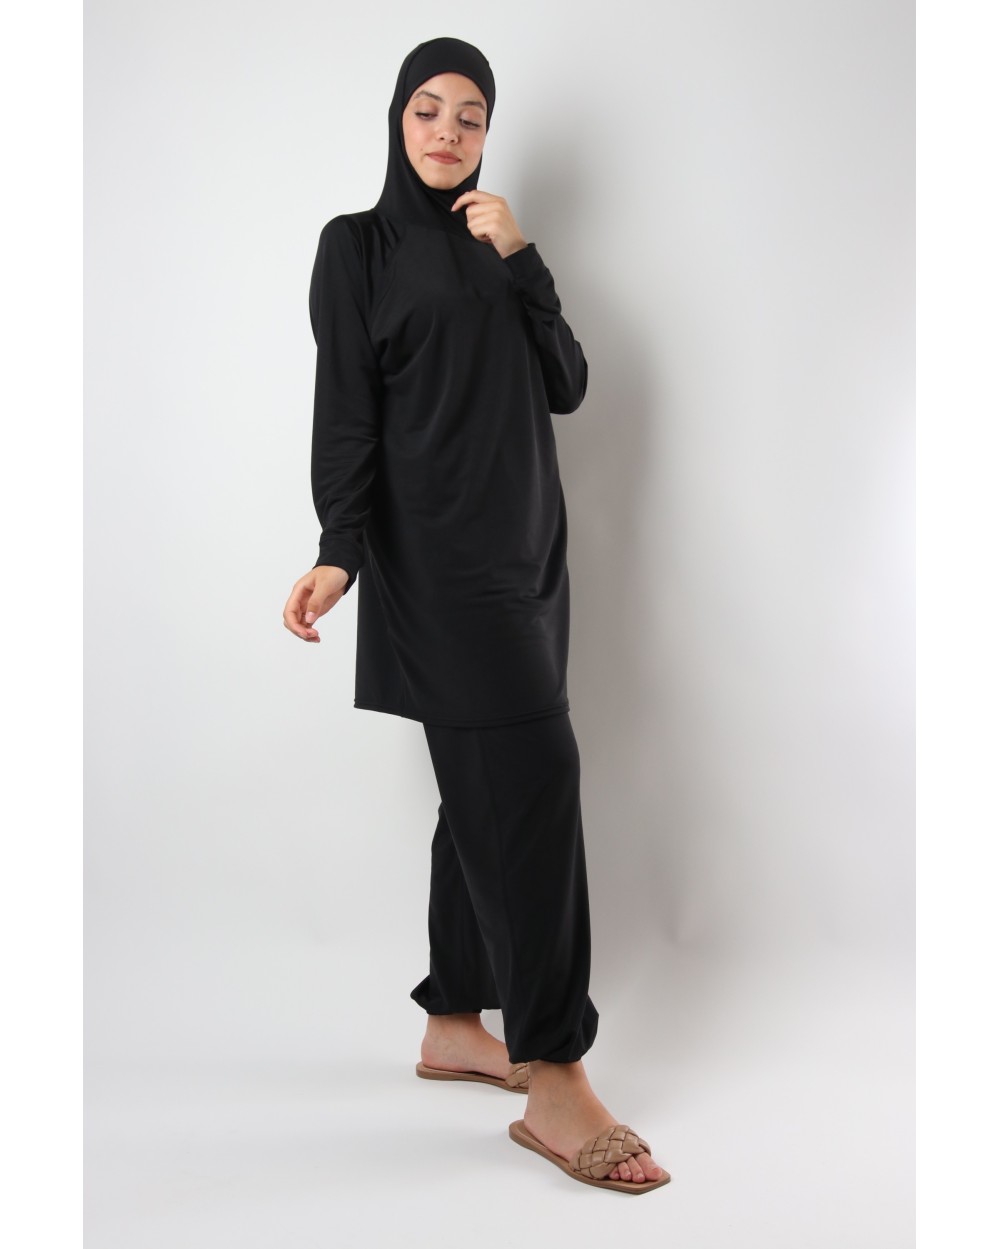 Burkini islamic Swimwear